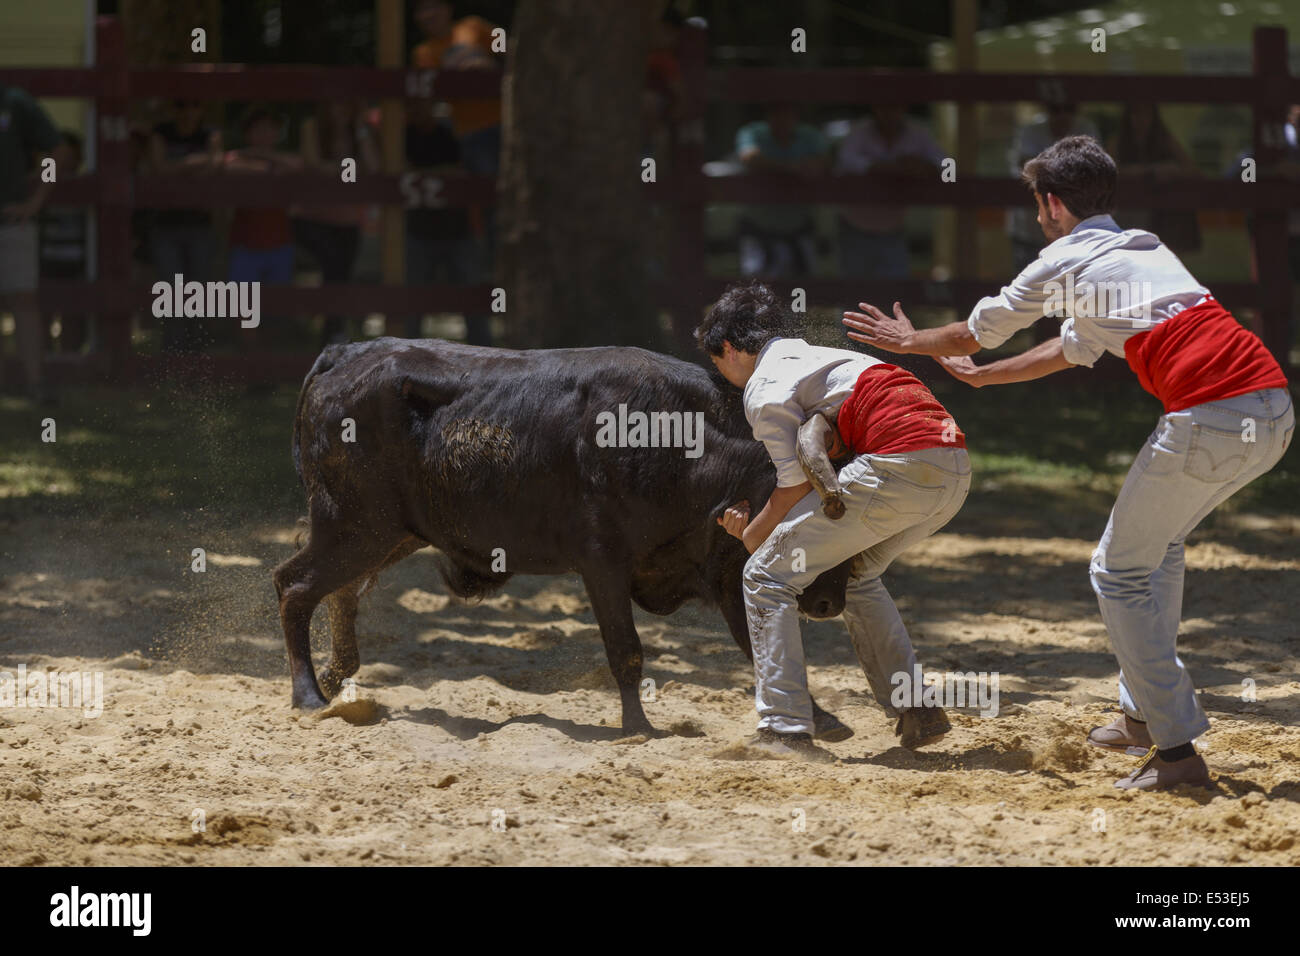 Grupo Forcados Amadores de Caldas Da Rainha. Portuguese young bullfighters or bull catching Stock Photo